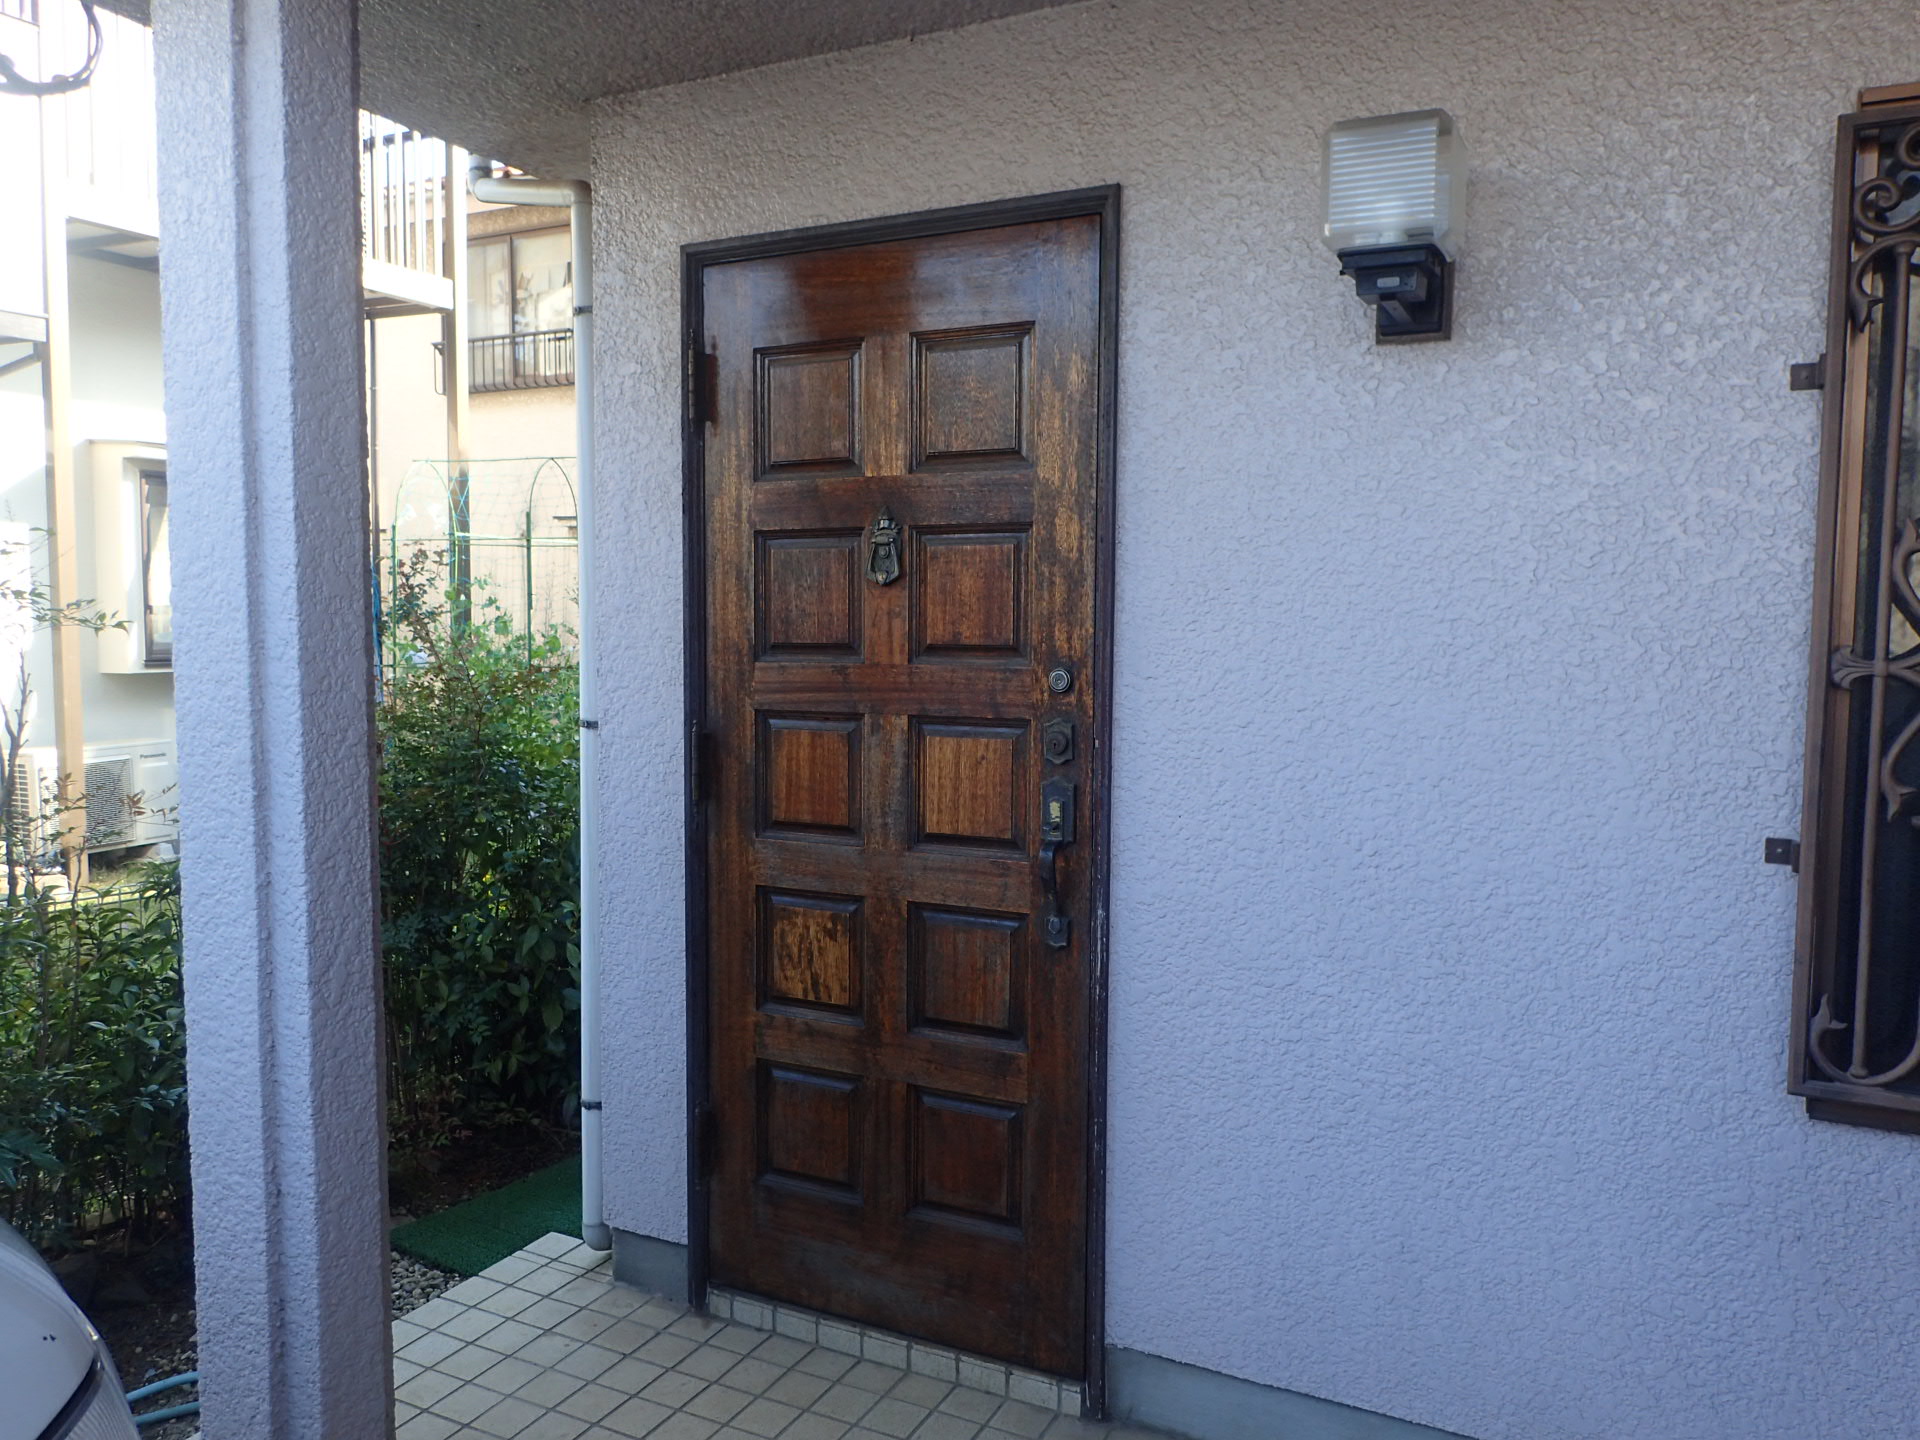 経年劣化の進んだ木製ドアをアルミドアに交換して機能性アップ